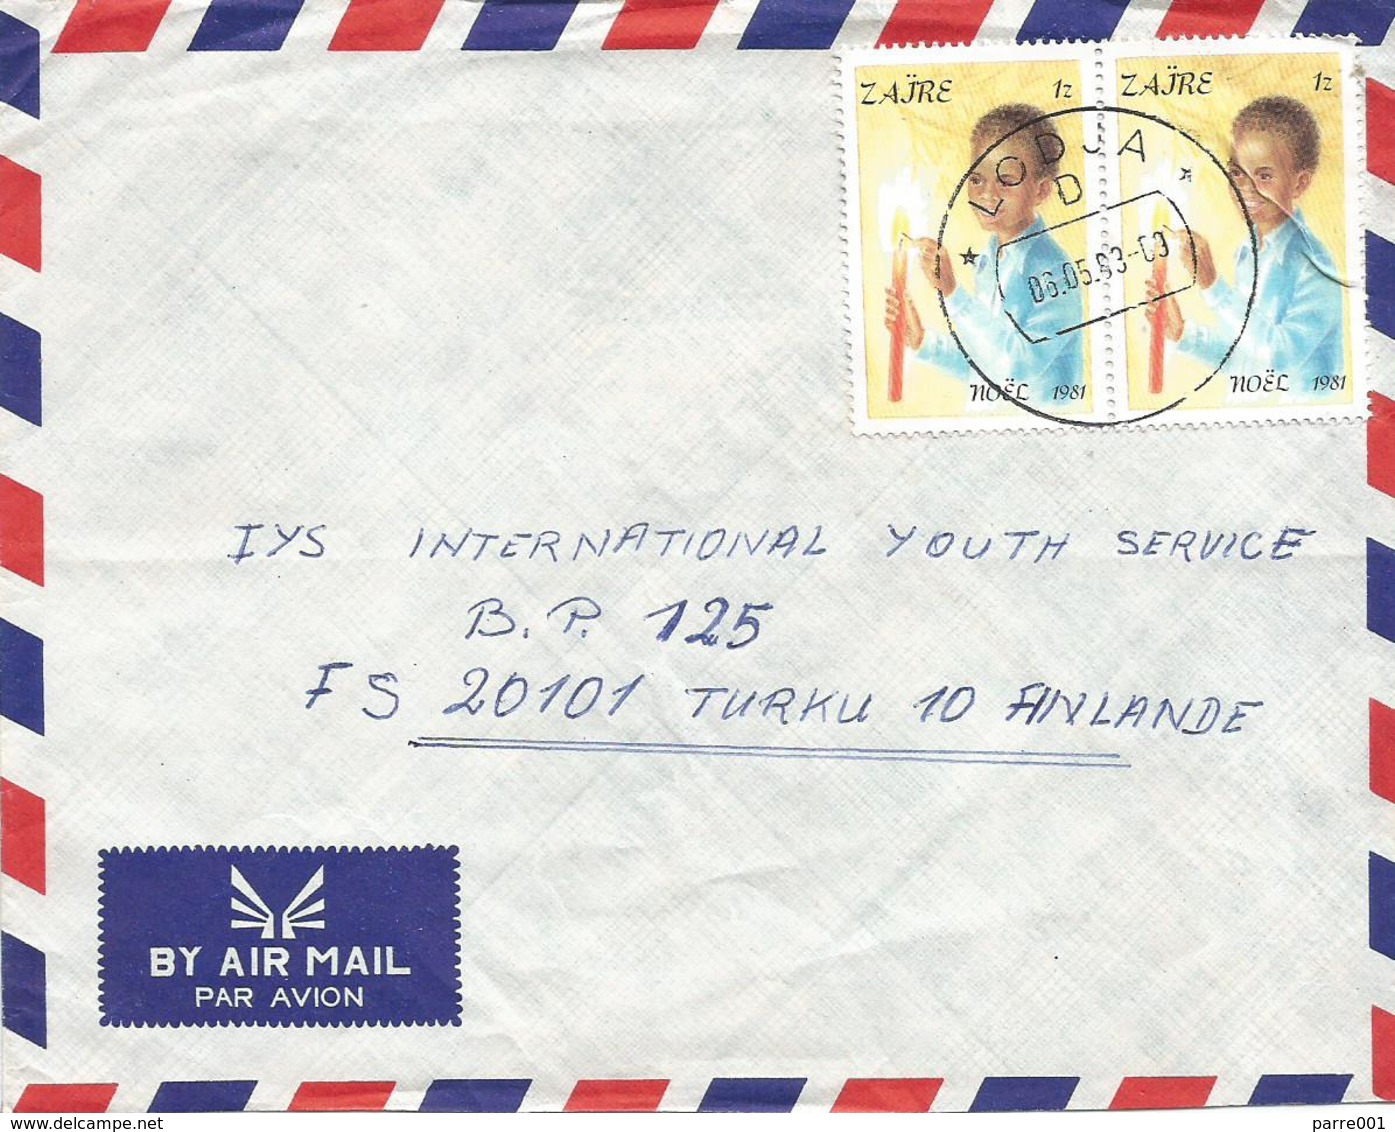 DRC RDC Zaire Congo 1983 Lodja Code Letter D Noel Christmas Candle 1Z Cover - Gebruikt